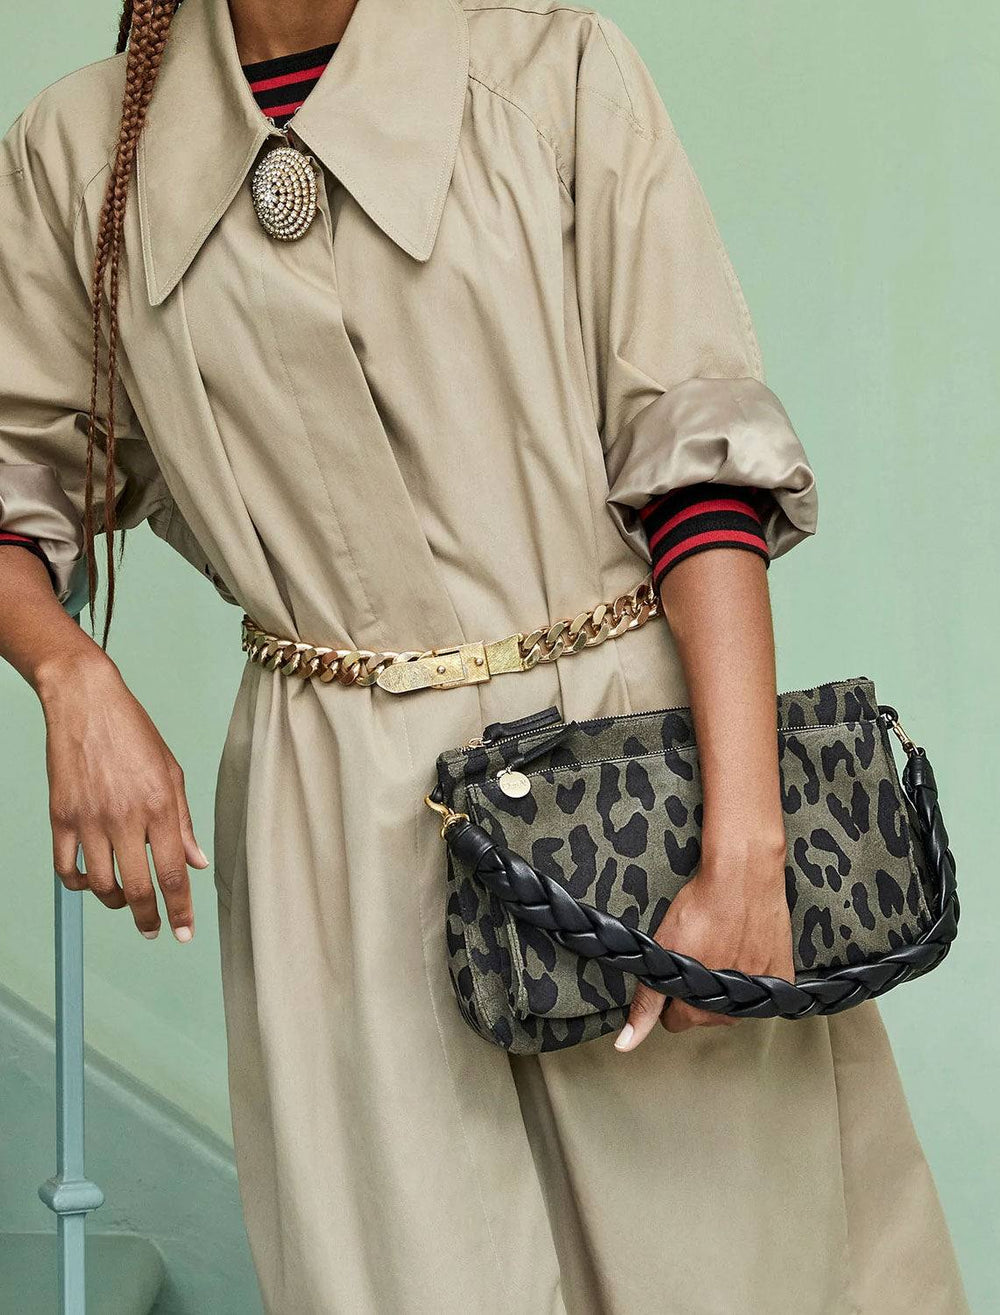 model carrying braided leather shoulder strap in black on olive leopard handbag. handbag not included